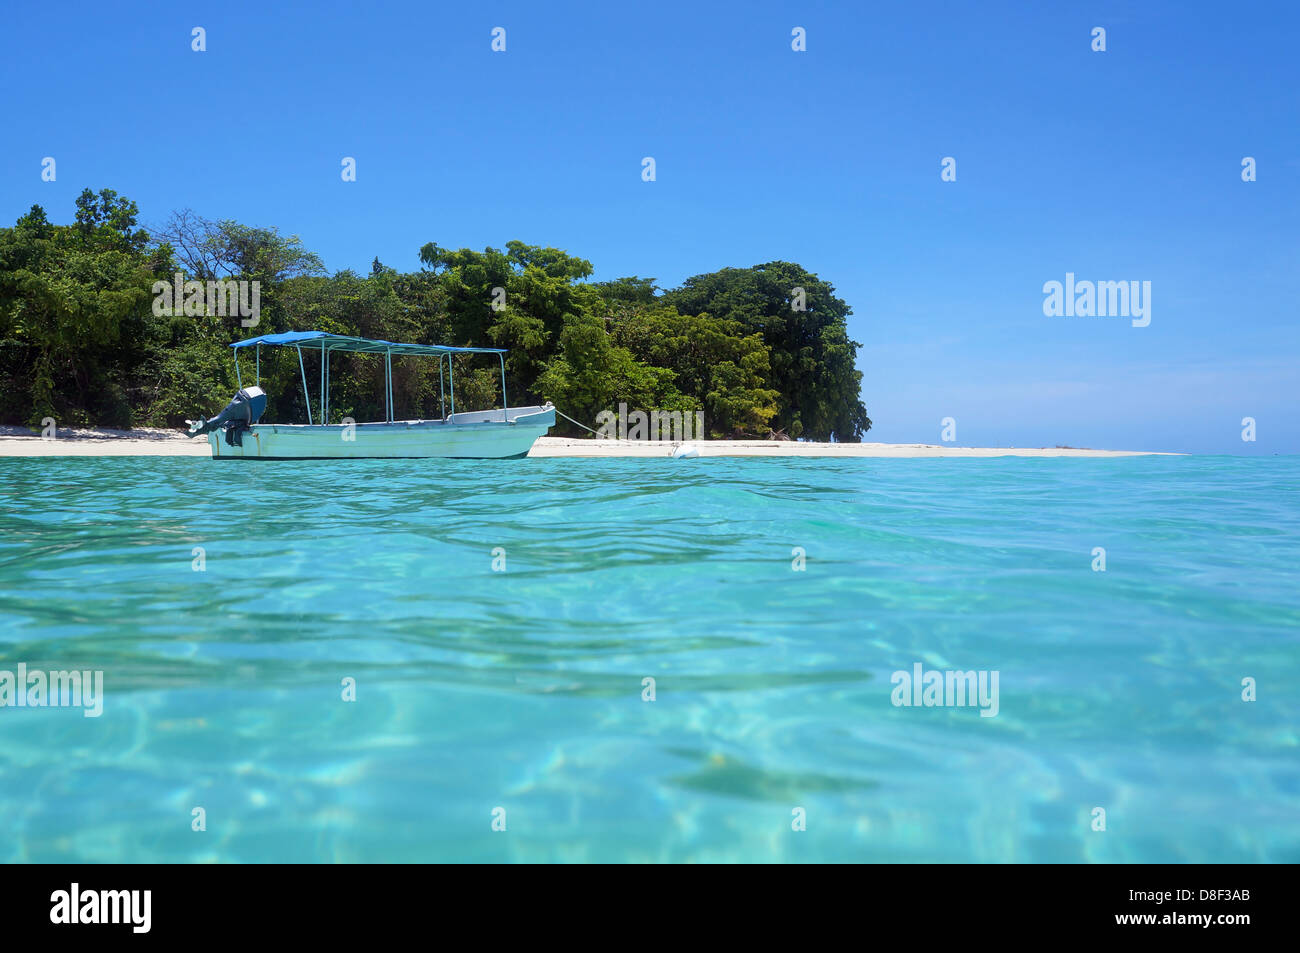 Tropische Insel-Strand mit einem Boot im türkisfarbenen Wasser, Karibik, Panama Stockfoto